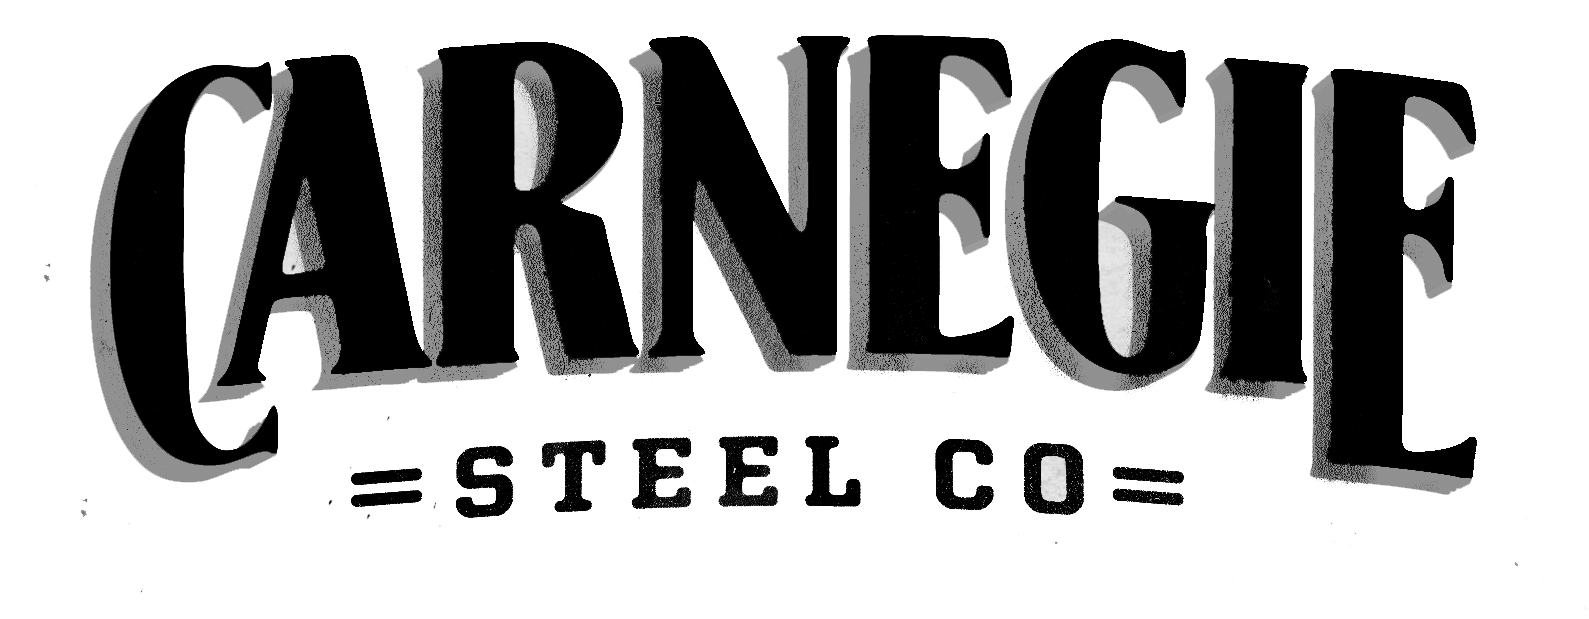 Carnegie Steel Logo - Carnegie Steel Co logo.png